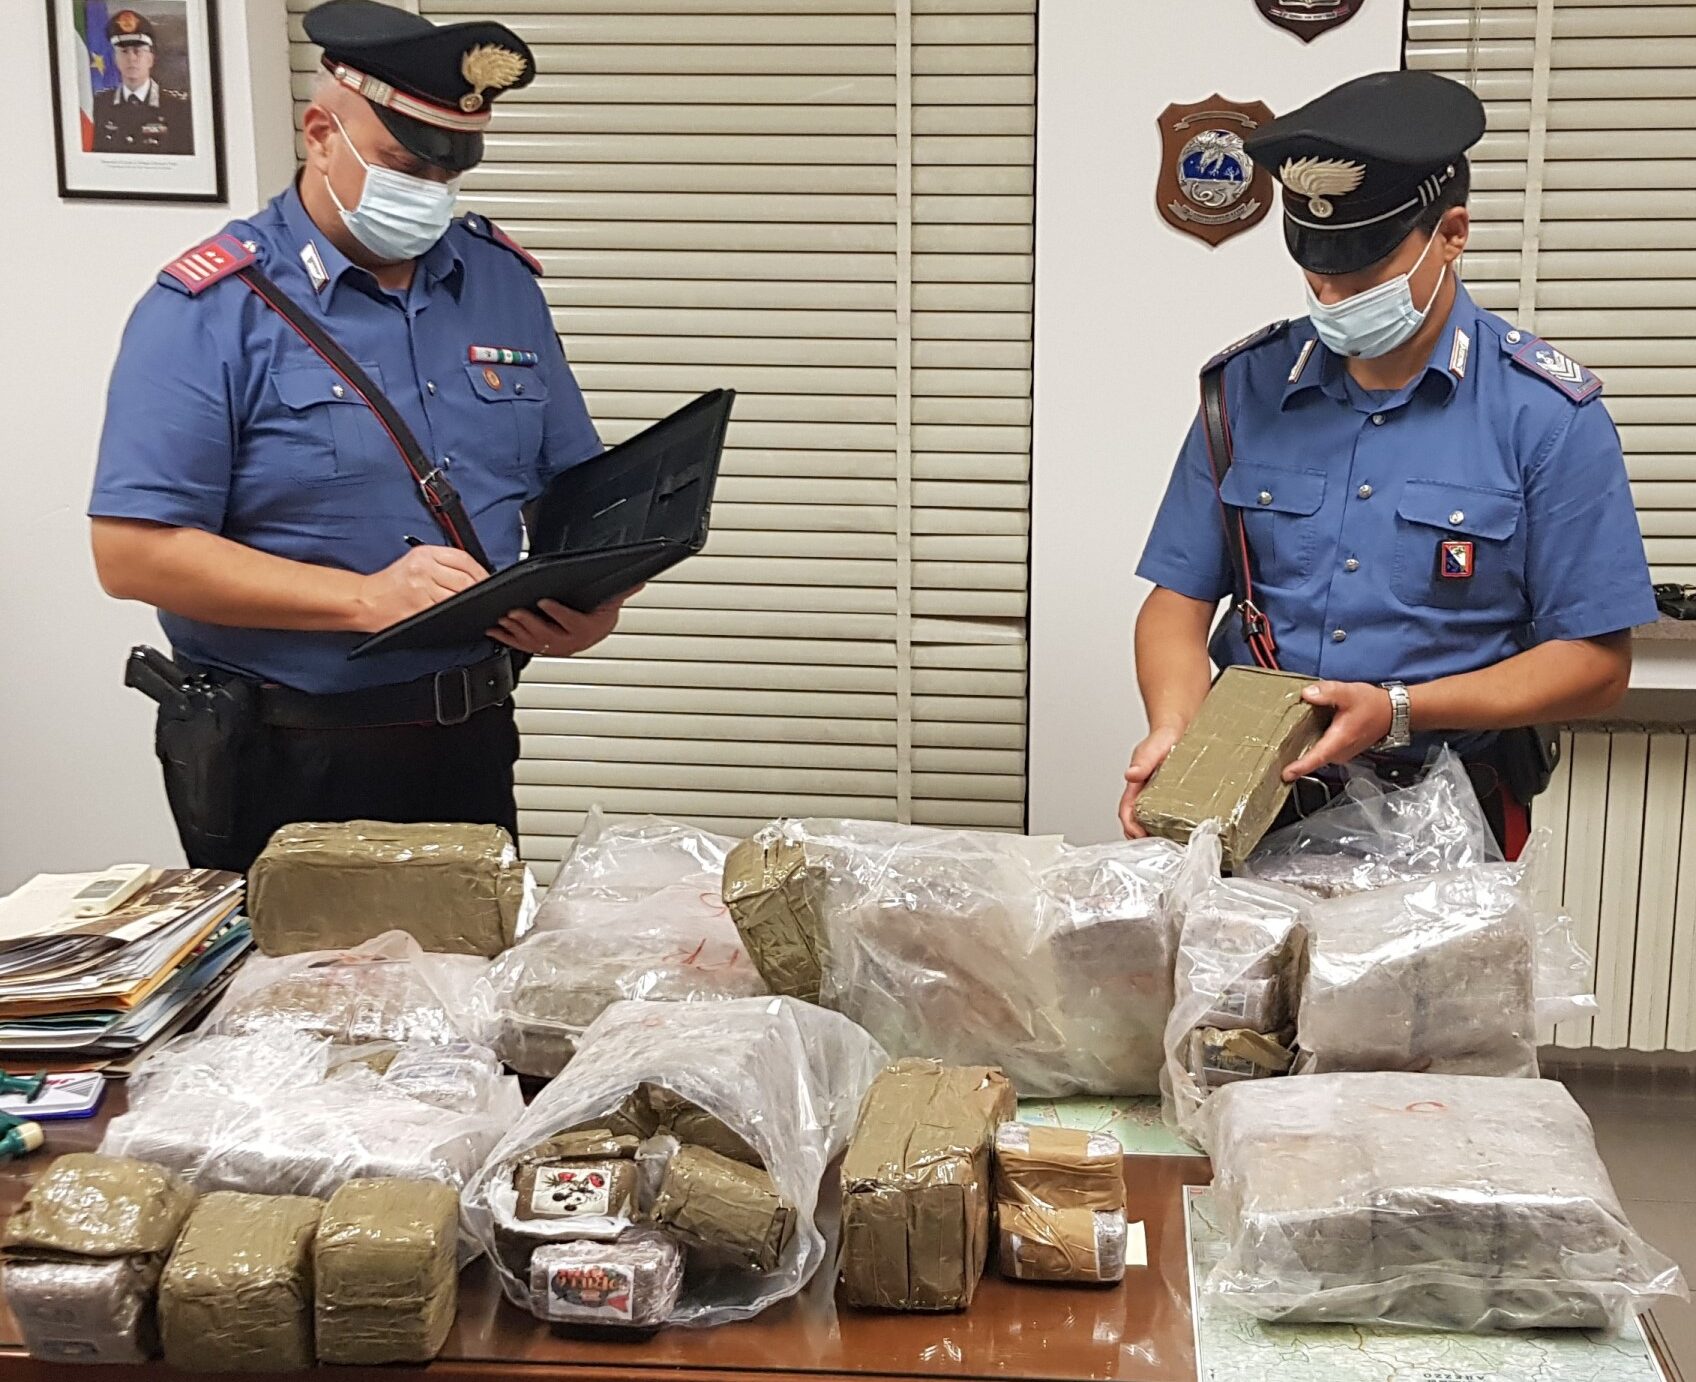 Max sequestro di droga ad Arezzo: i carabinieri arrestato trafficante con 60 chili di hashish